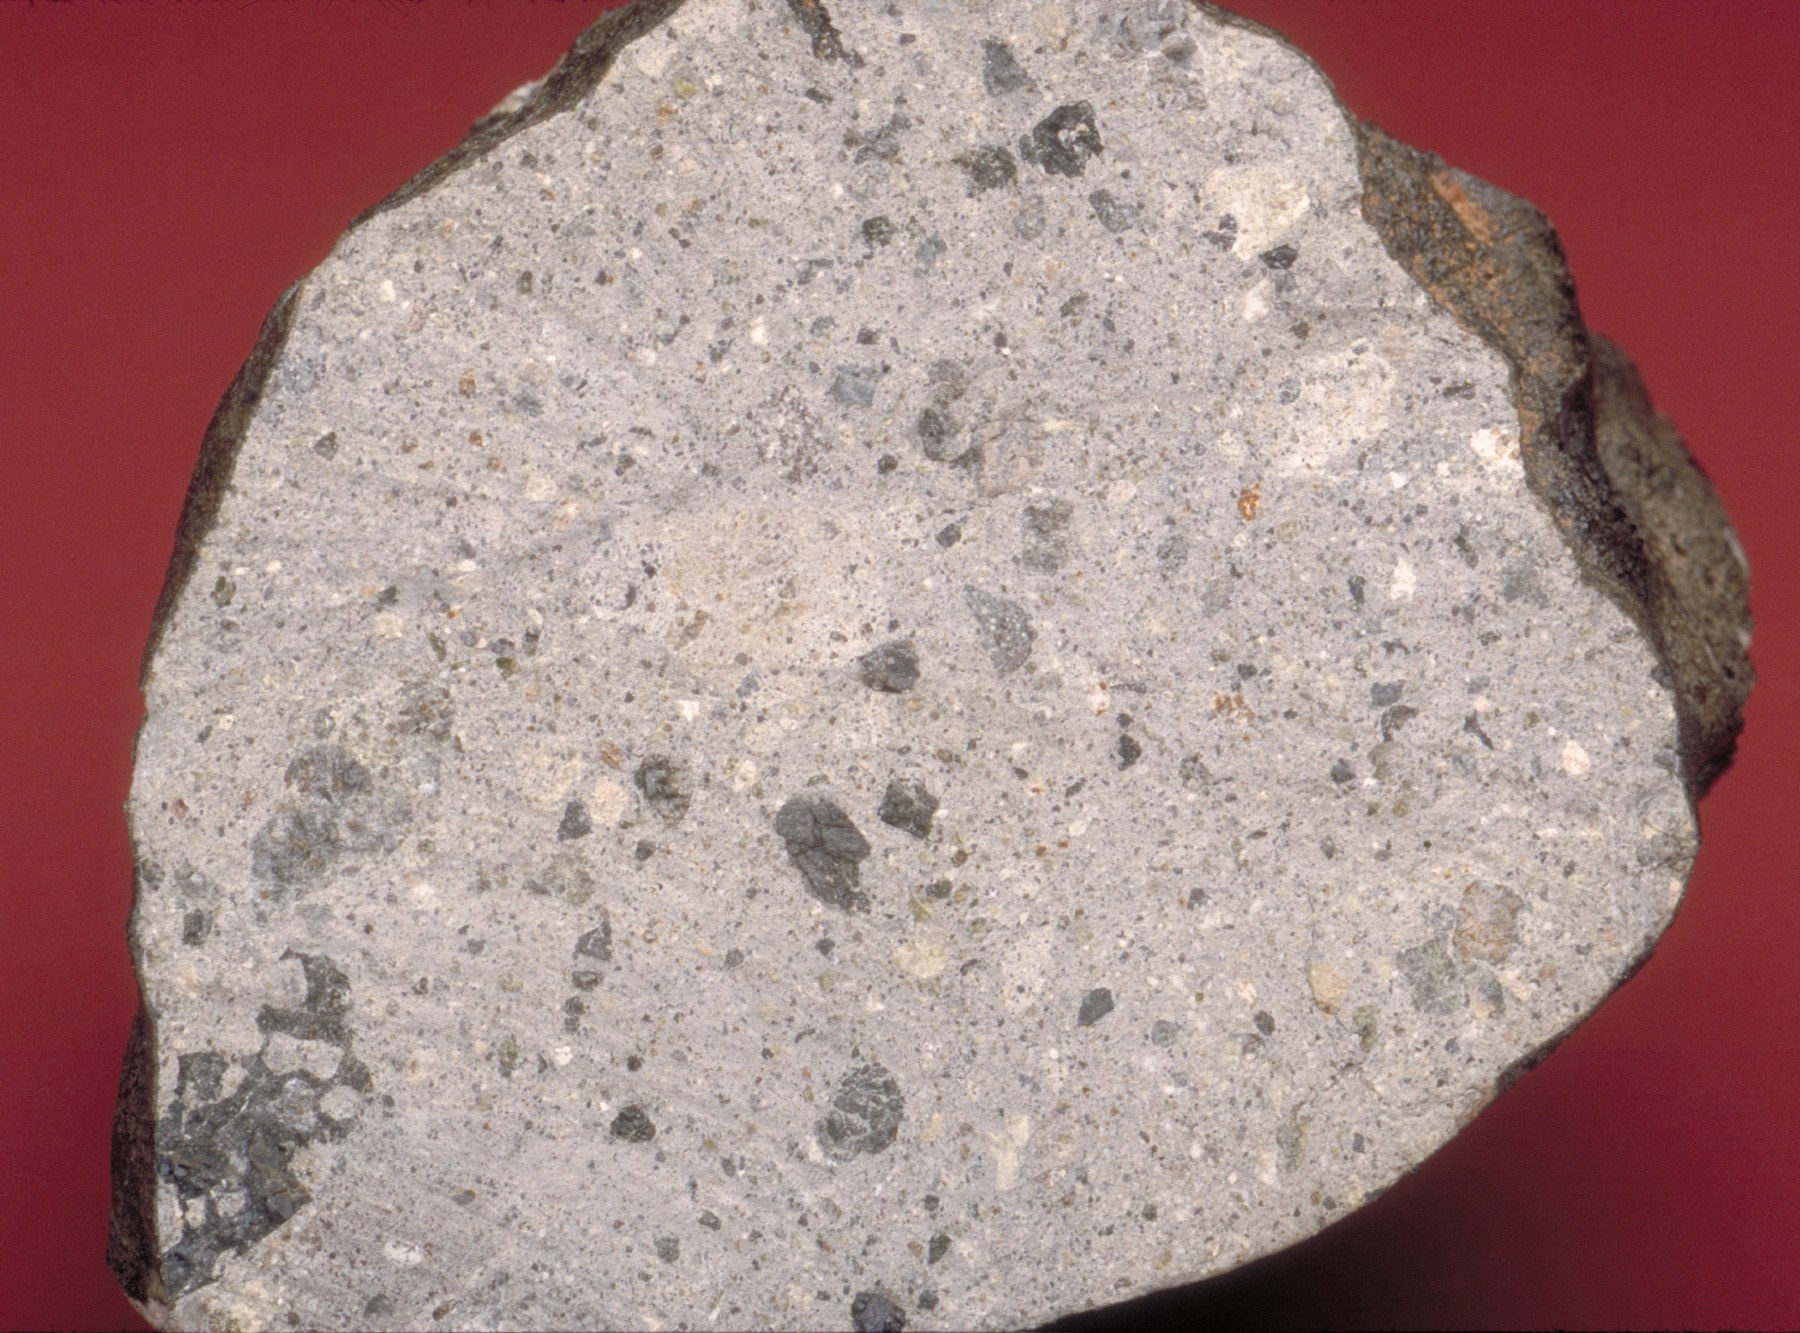 Howardite meteorite from the asteroid Vesta